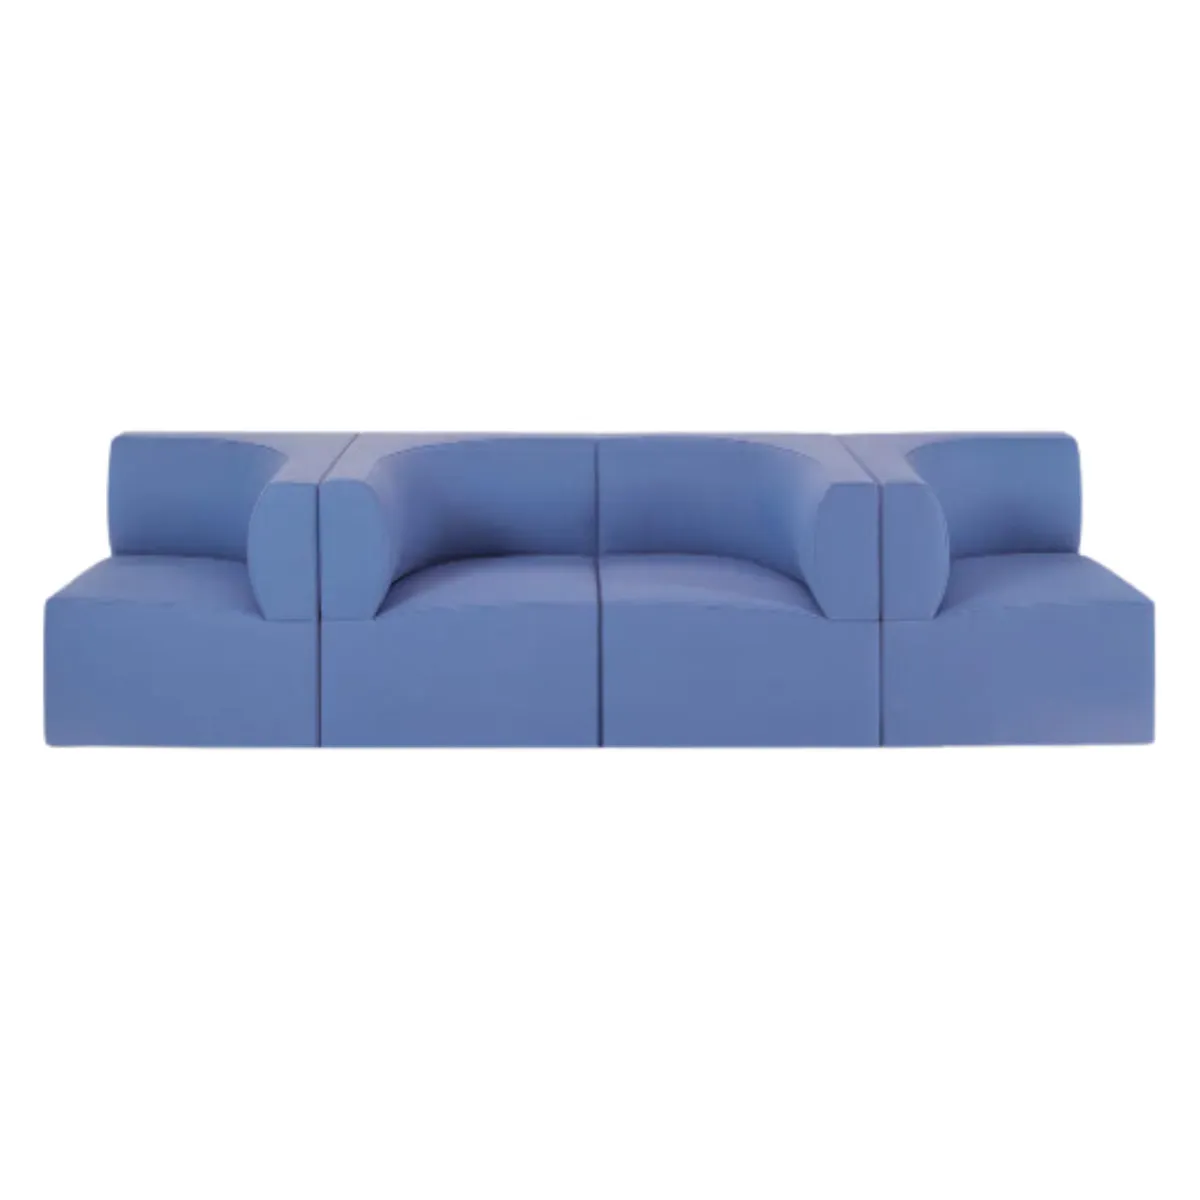 Canto modular sofa 1